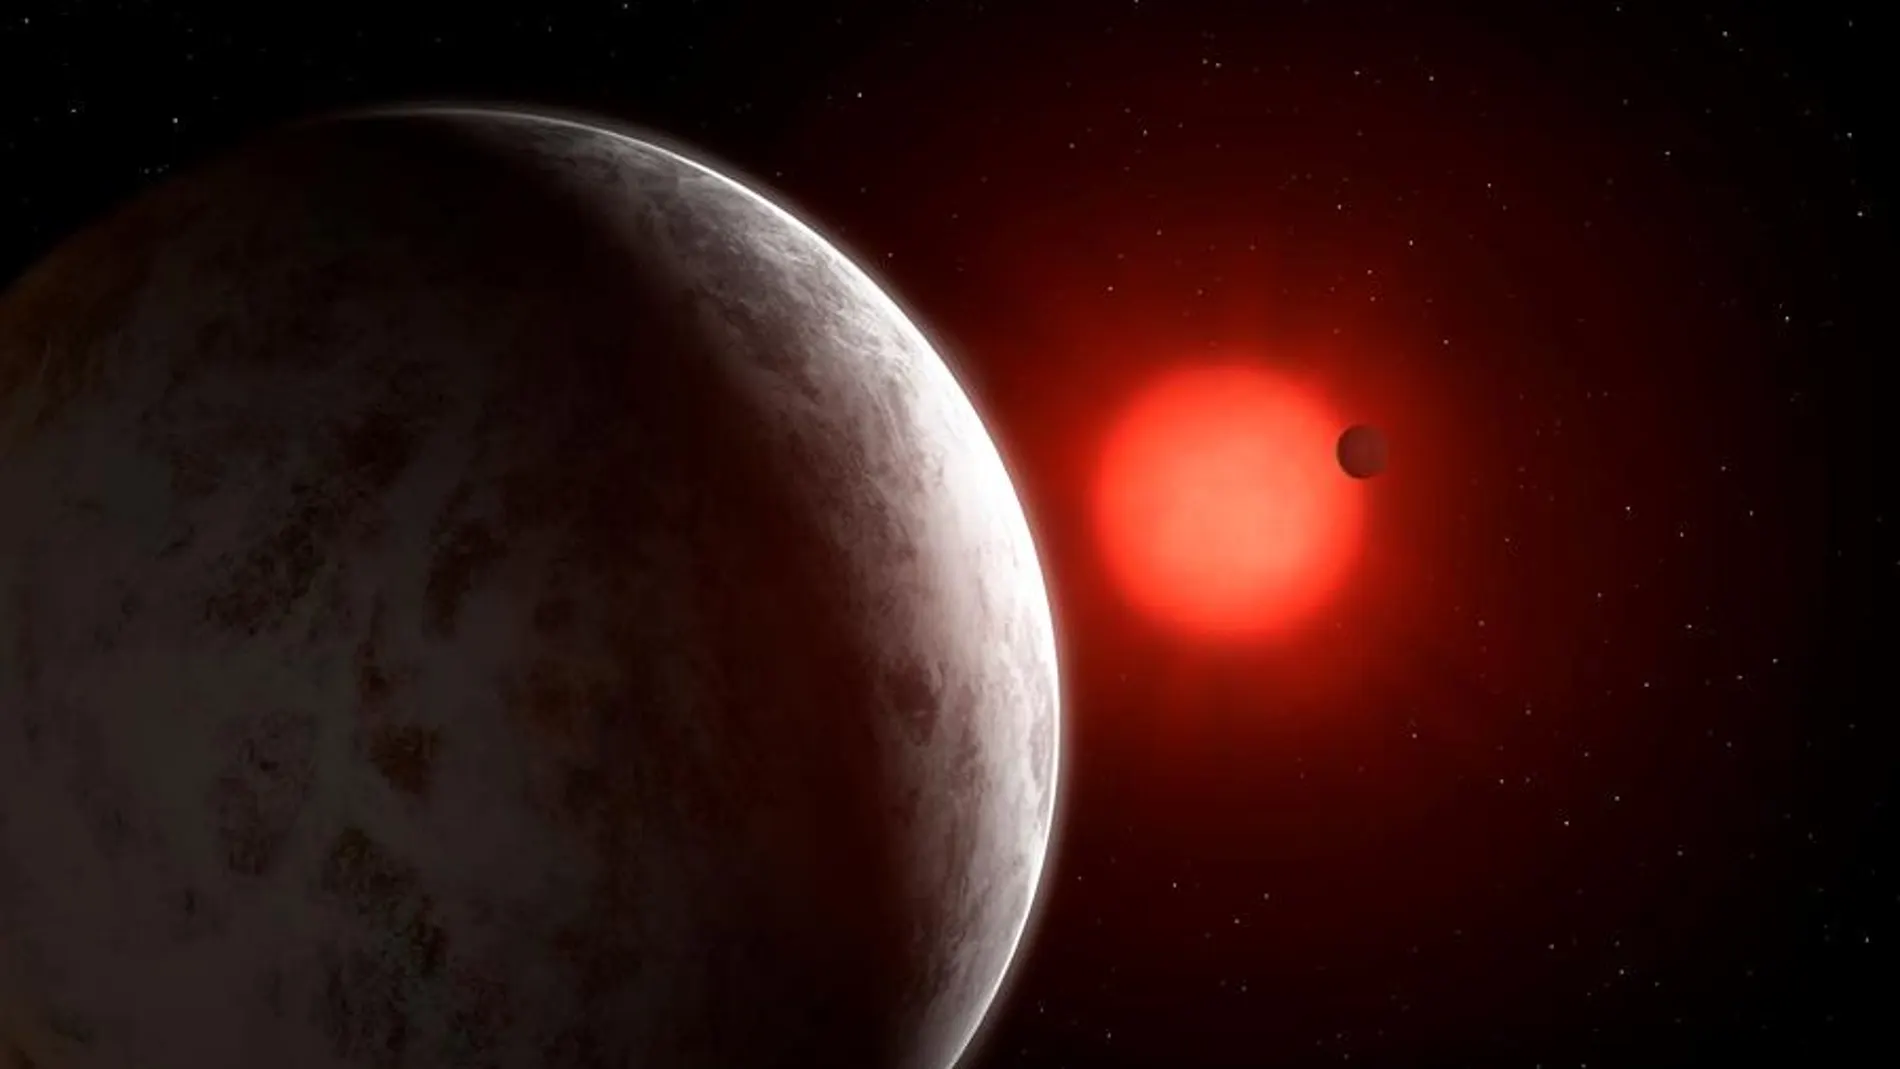 Descubren dos nuevas supertierras y una tercera candidata en una estrella vecina al sistema solar